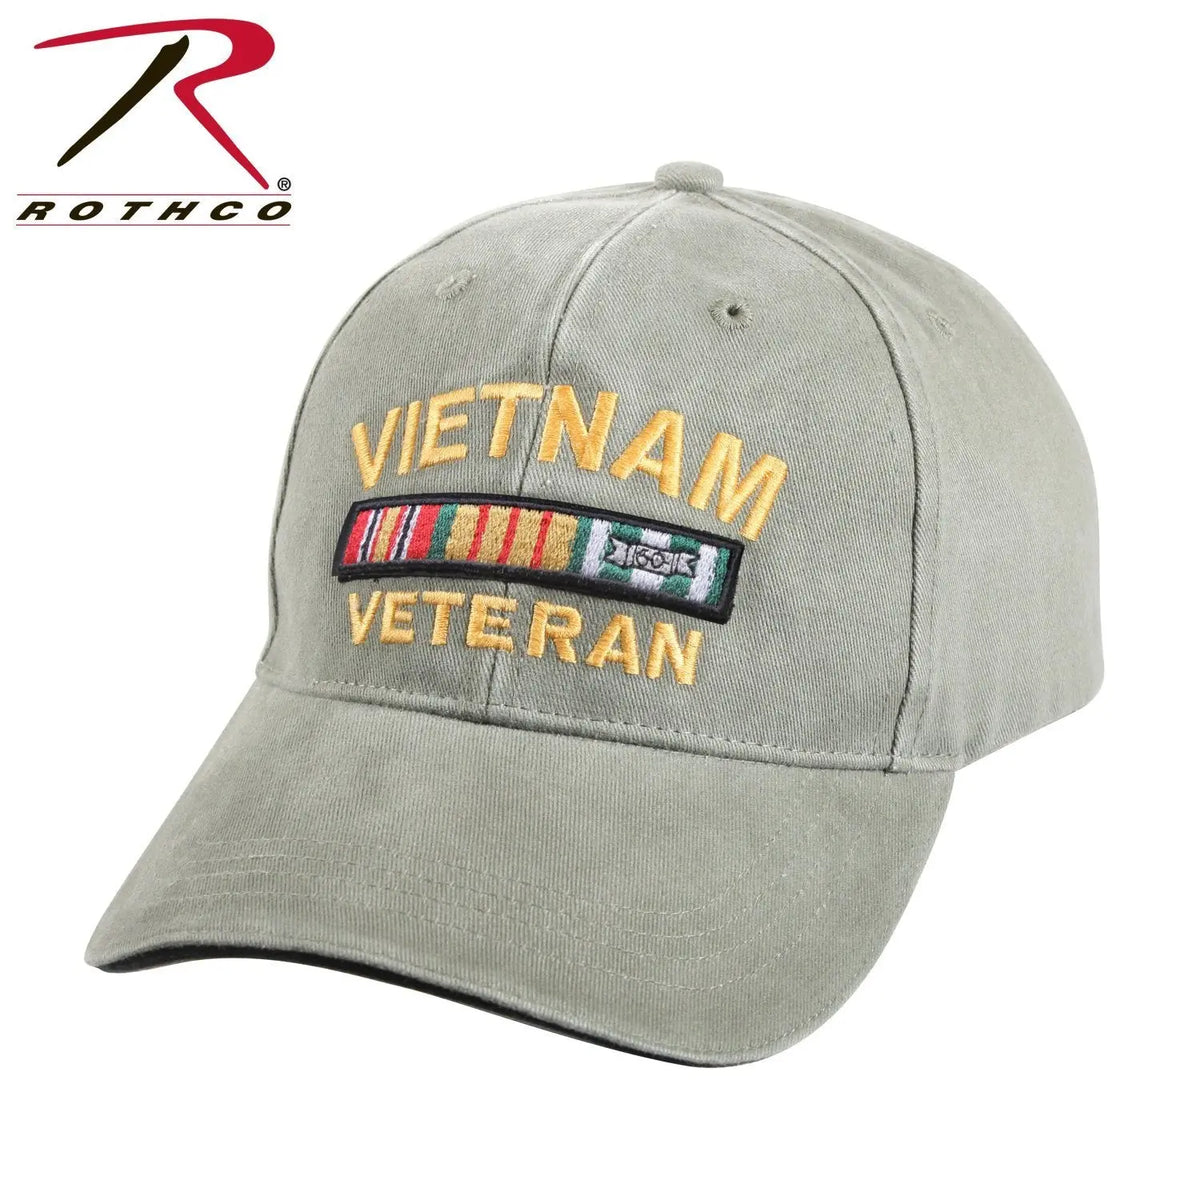 Vietnam Veteran Cover - Stone - Marine Corps Direct